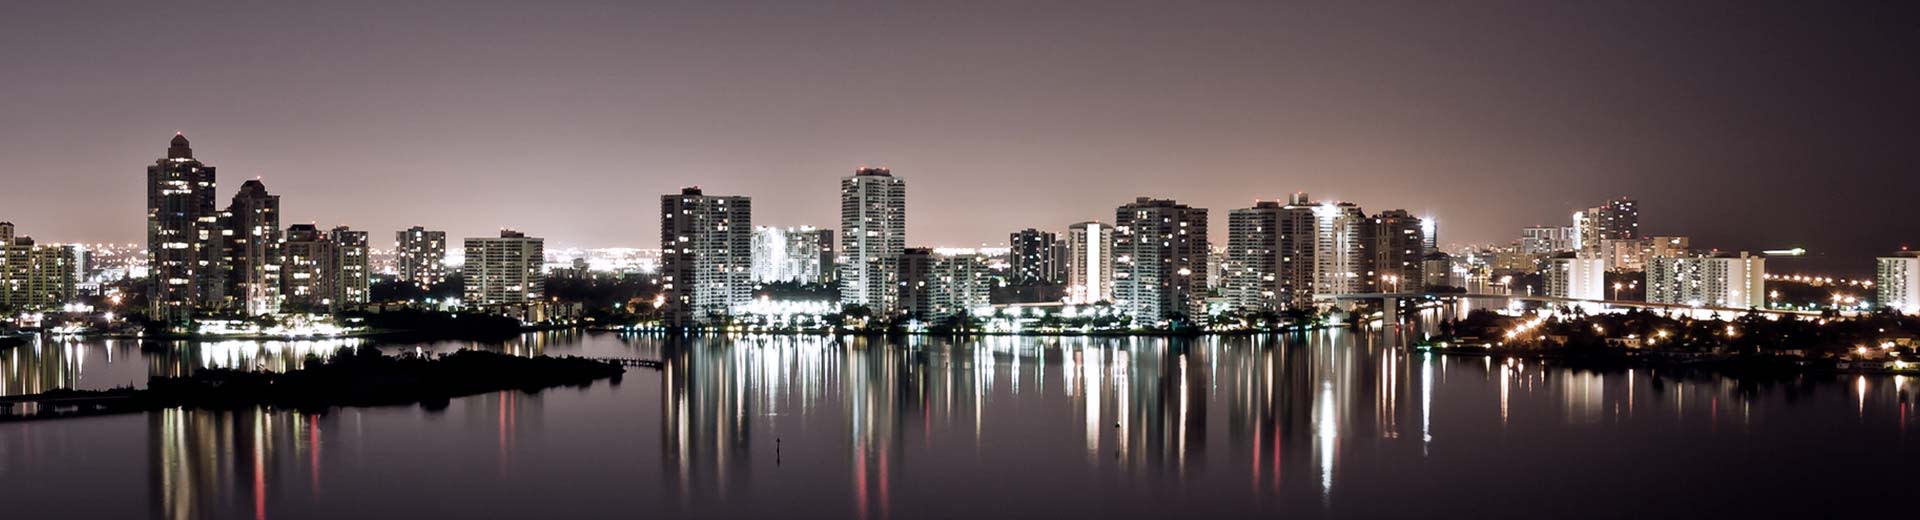 Nachts beleuchtet die Skyline von Fort Lauderdale den Himmel.